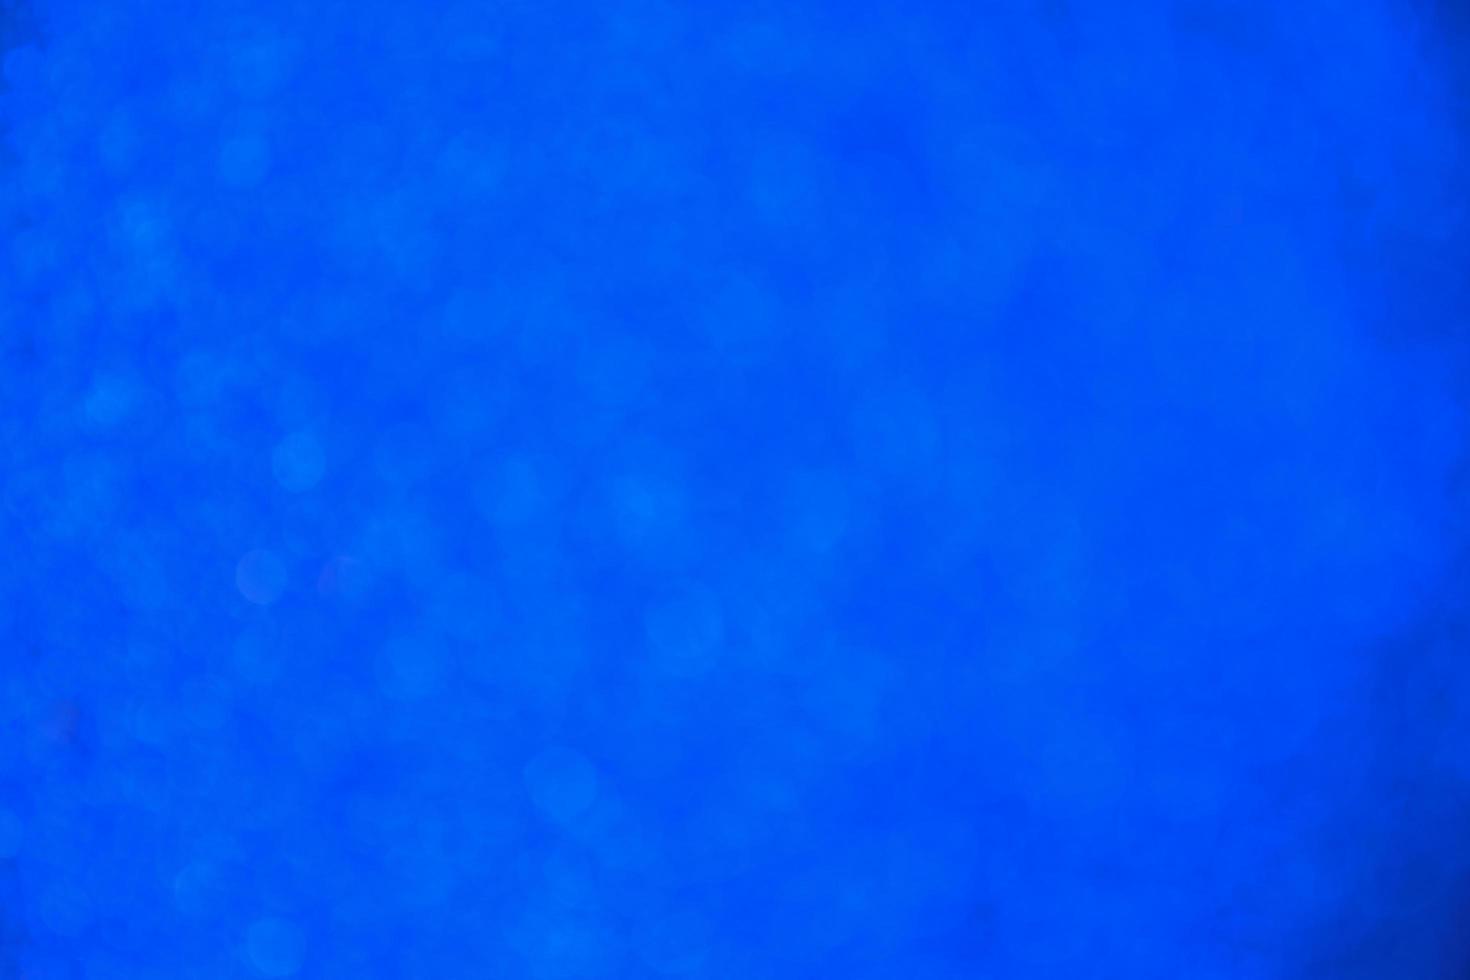 fundo abstrato textura brilhante azul. foto